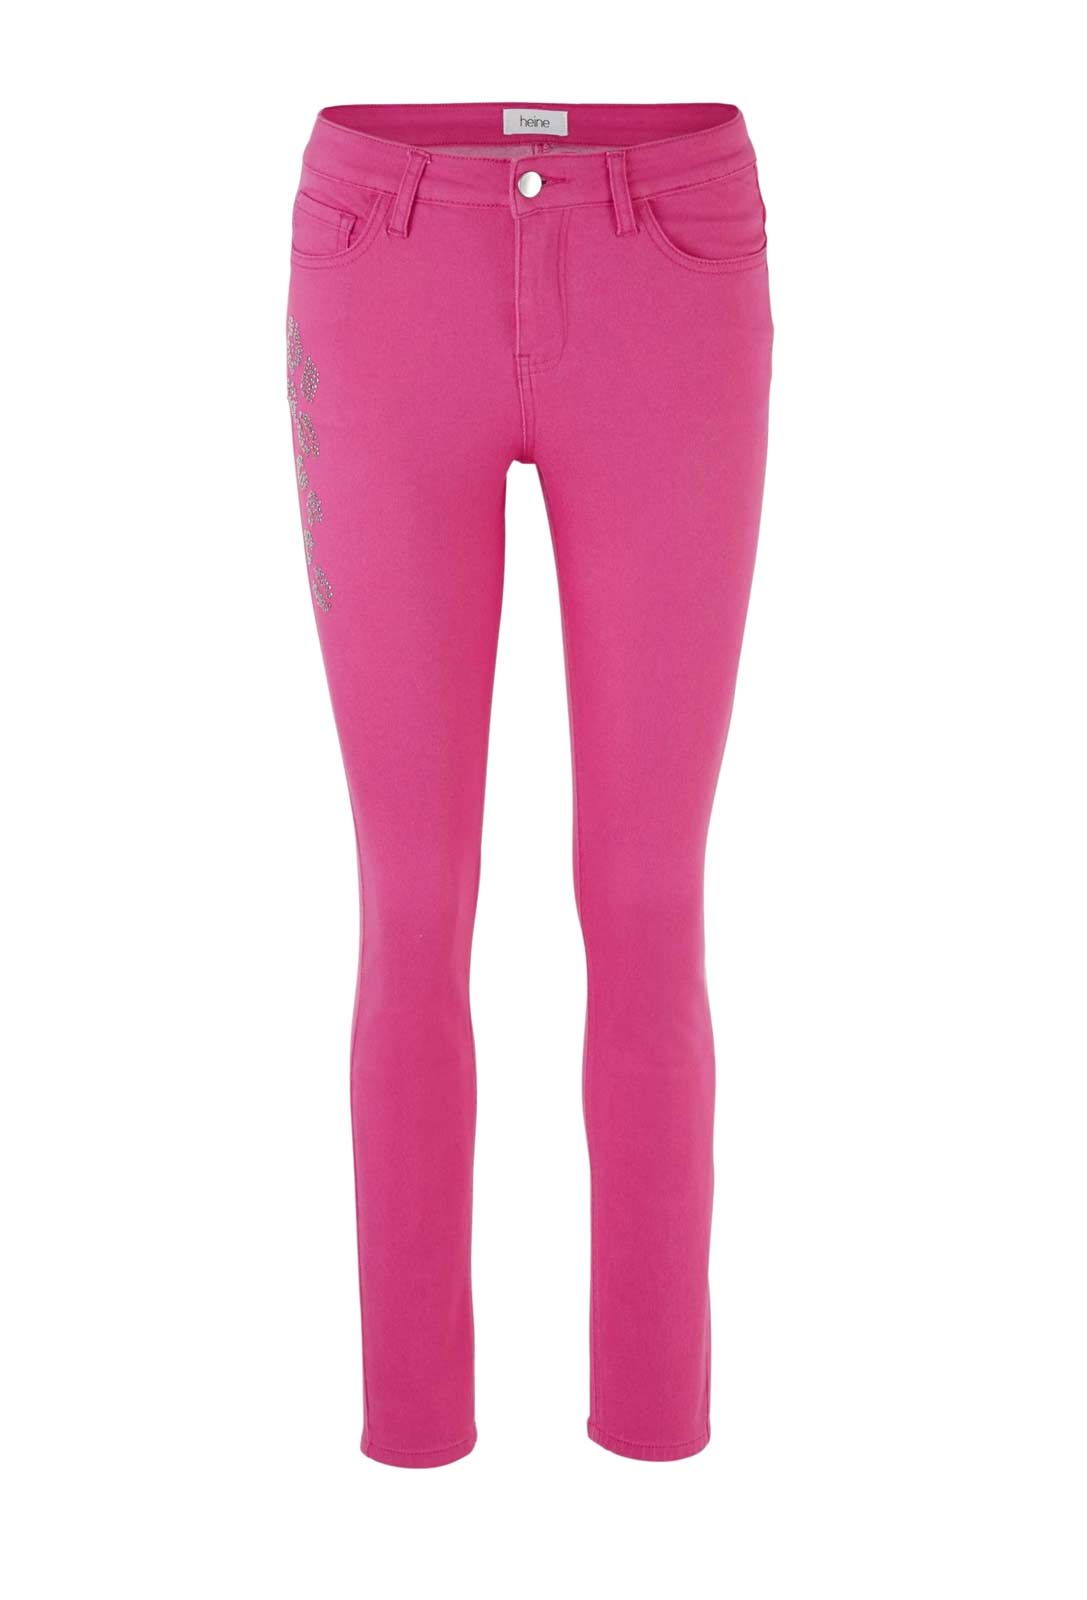 Heine Damen Slim-Fit-Jeans mit Nieten, pink